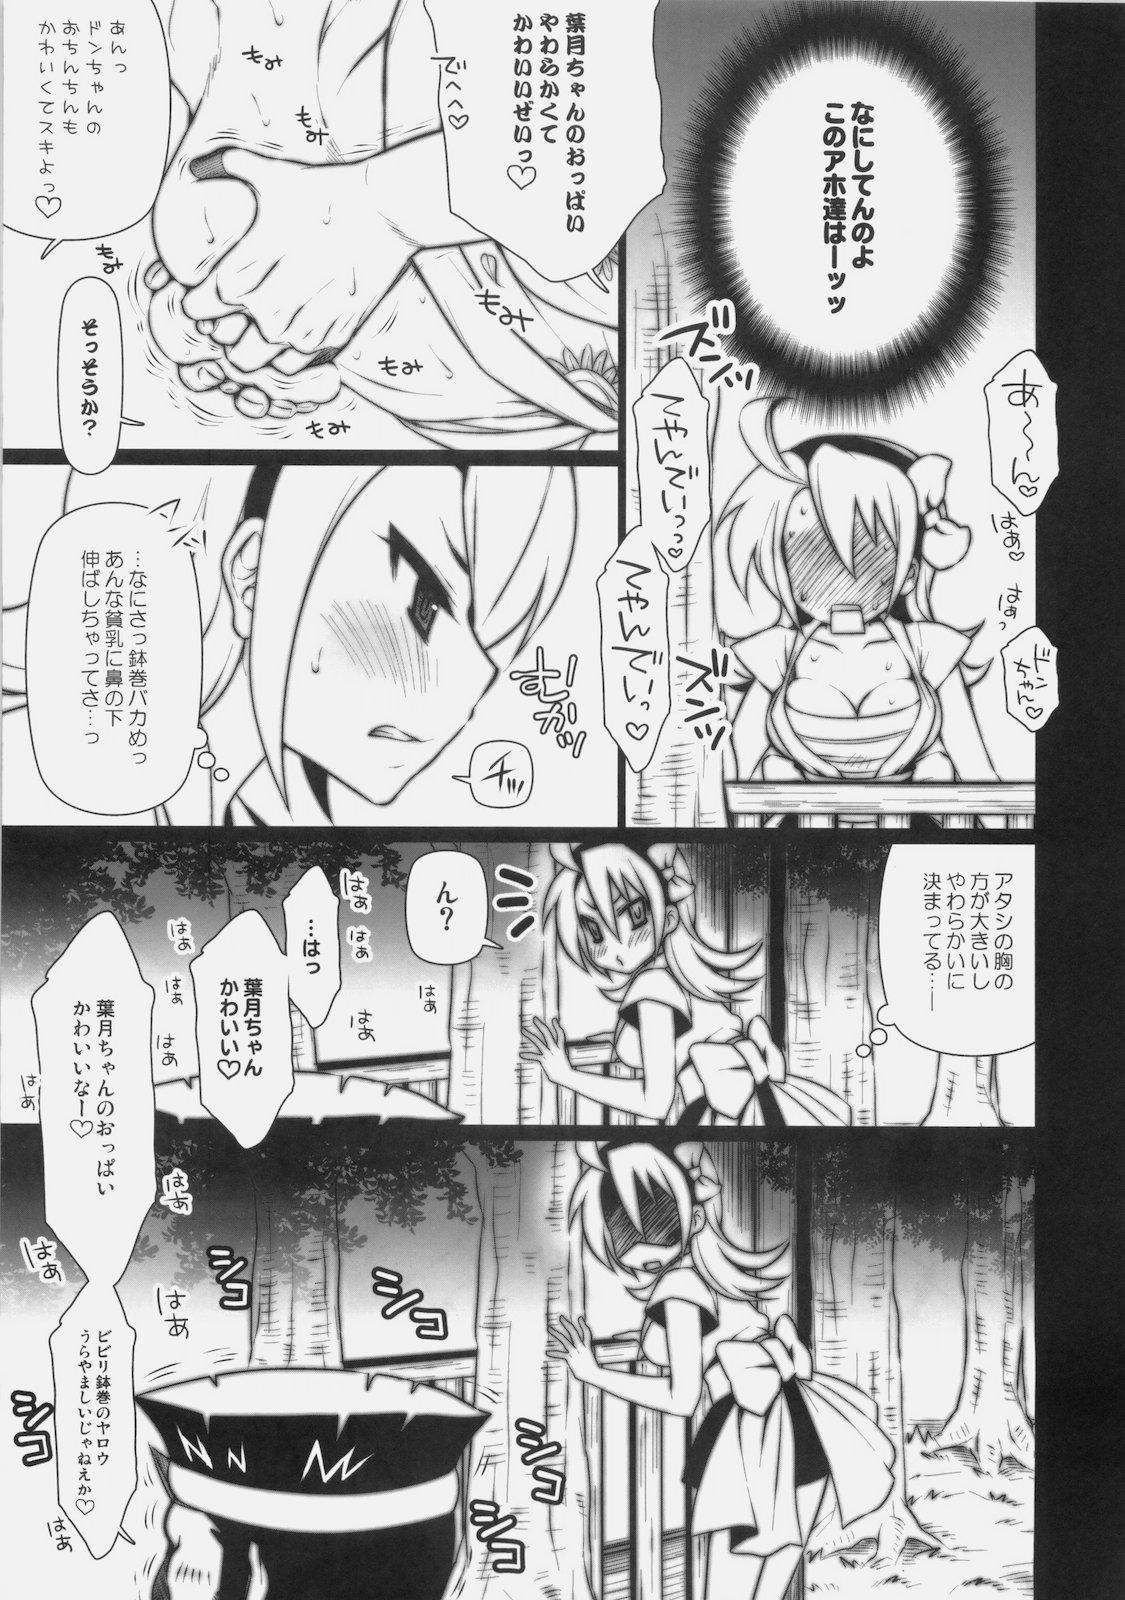 Dicksucking Matsuri no Yoru ni - Ao don hanabi no kiwami Cocksuckers - Page 4